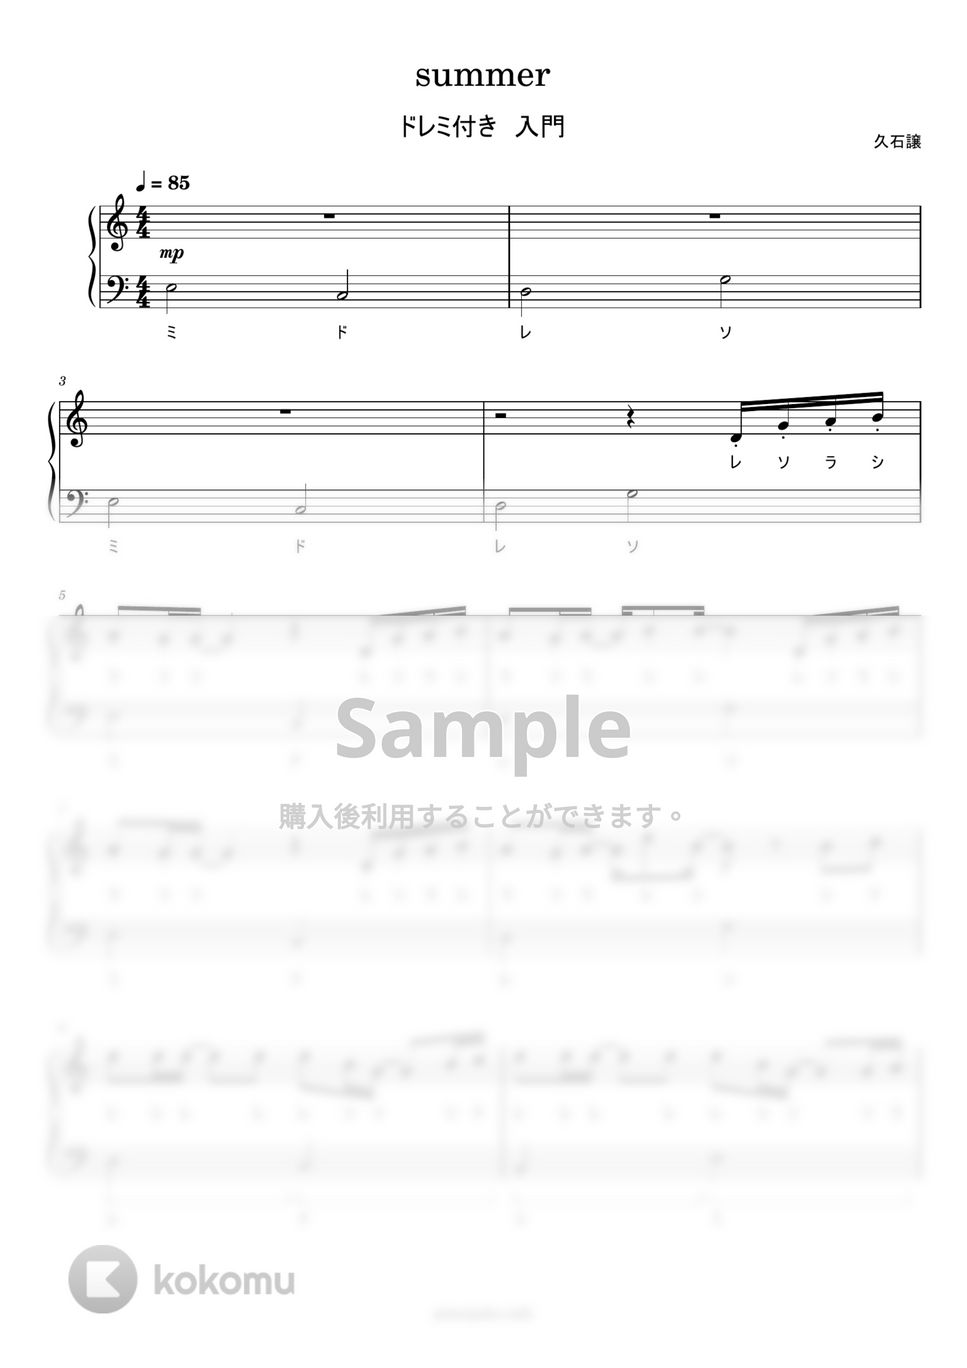 久石譲 - summer (ドレミ付き簡単楽譜) by ピアノ塾